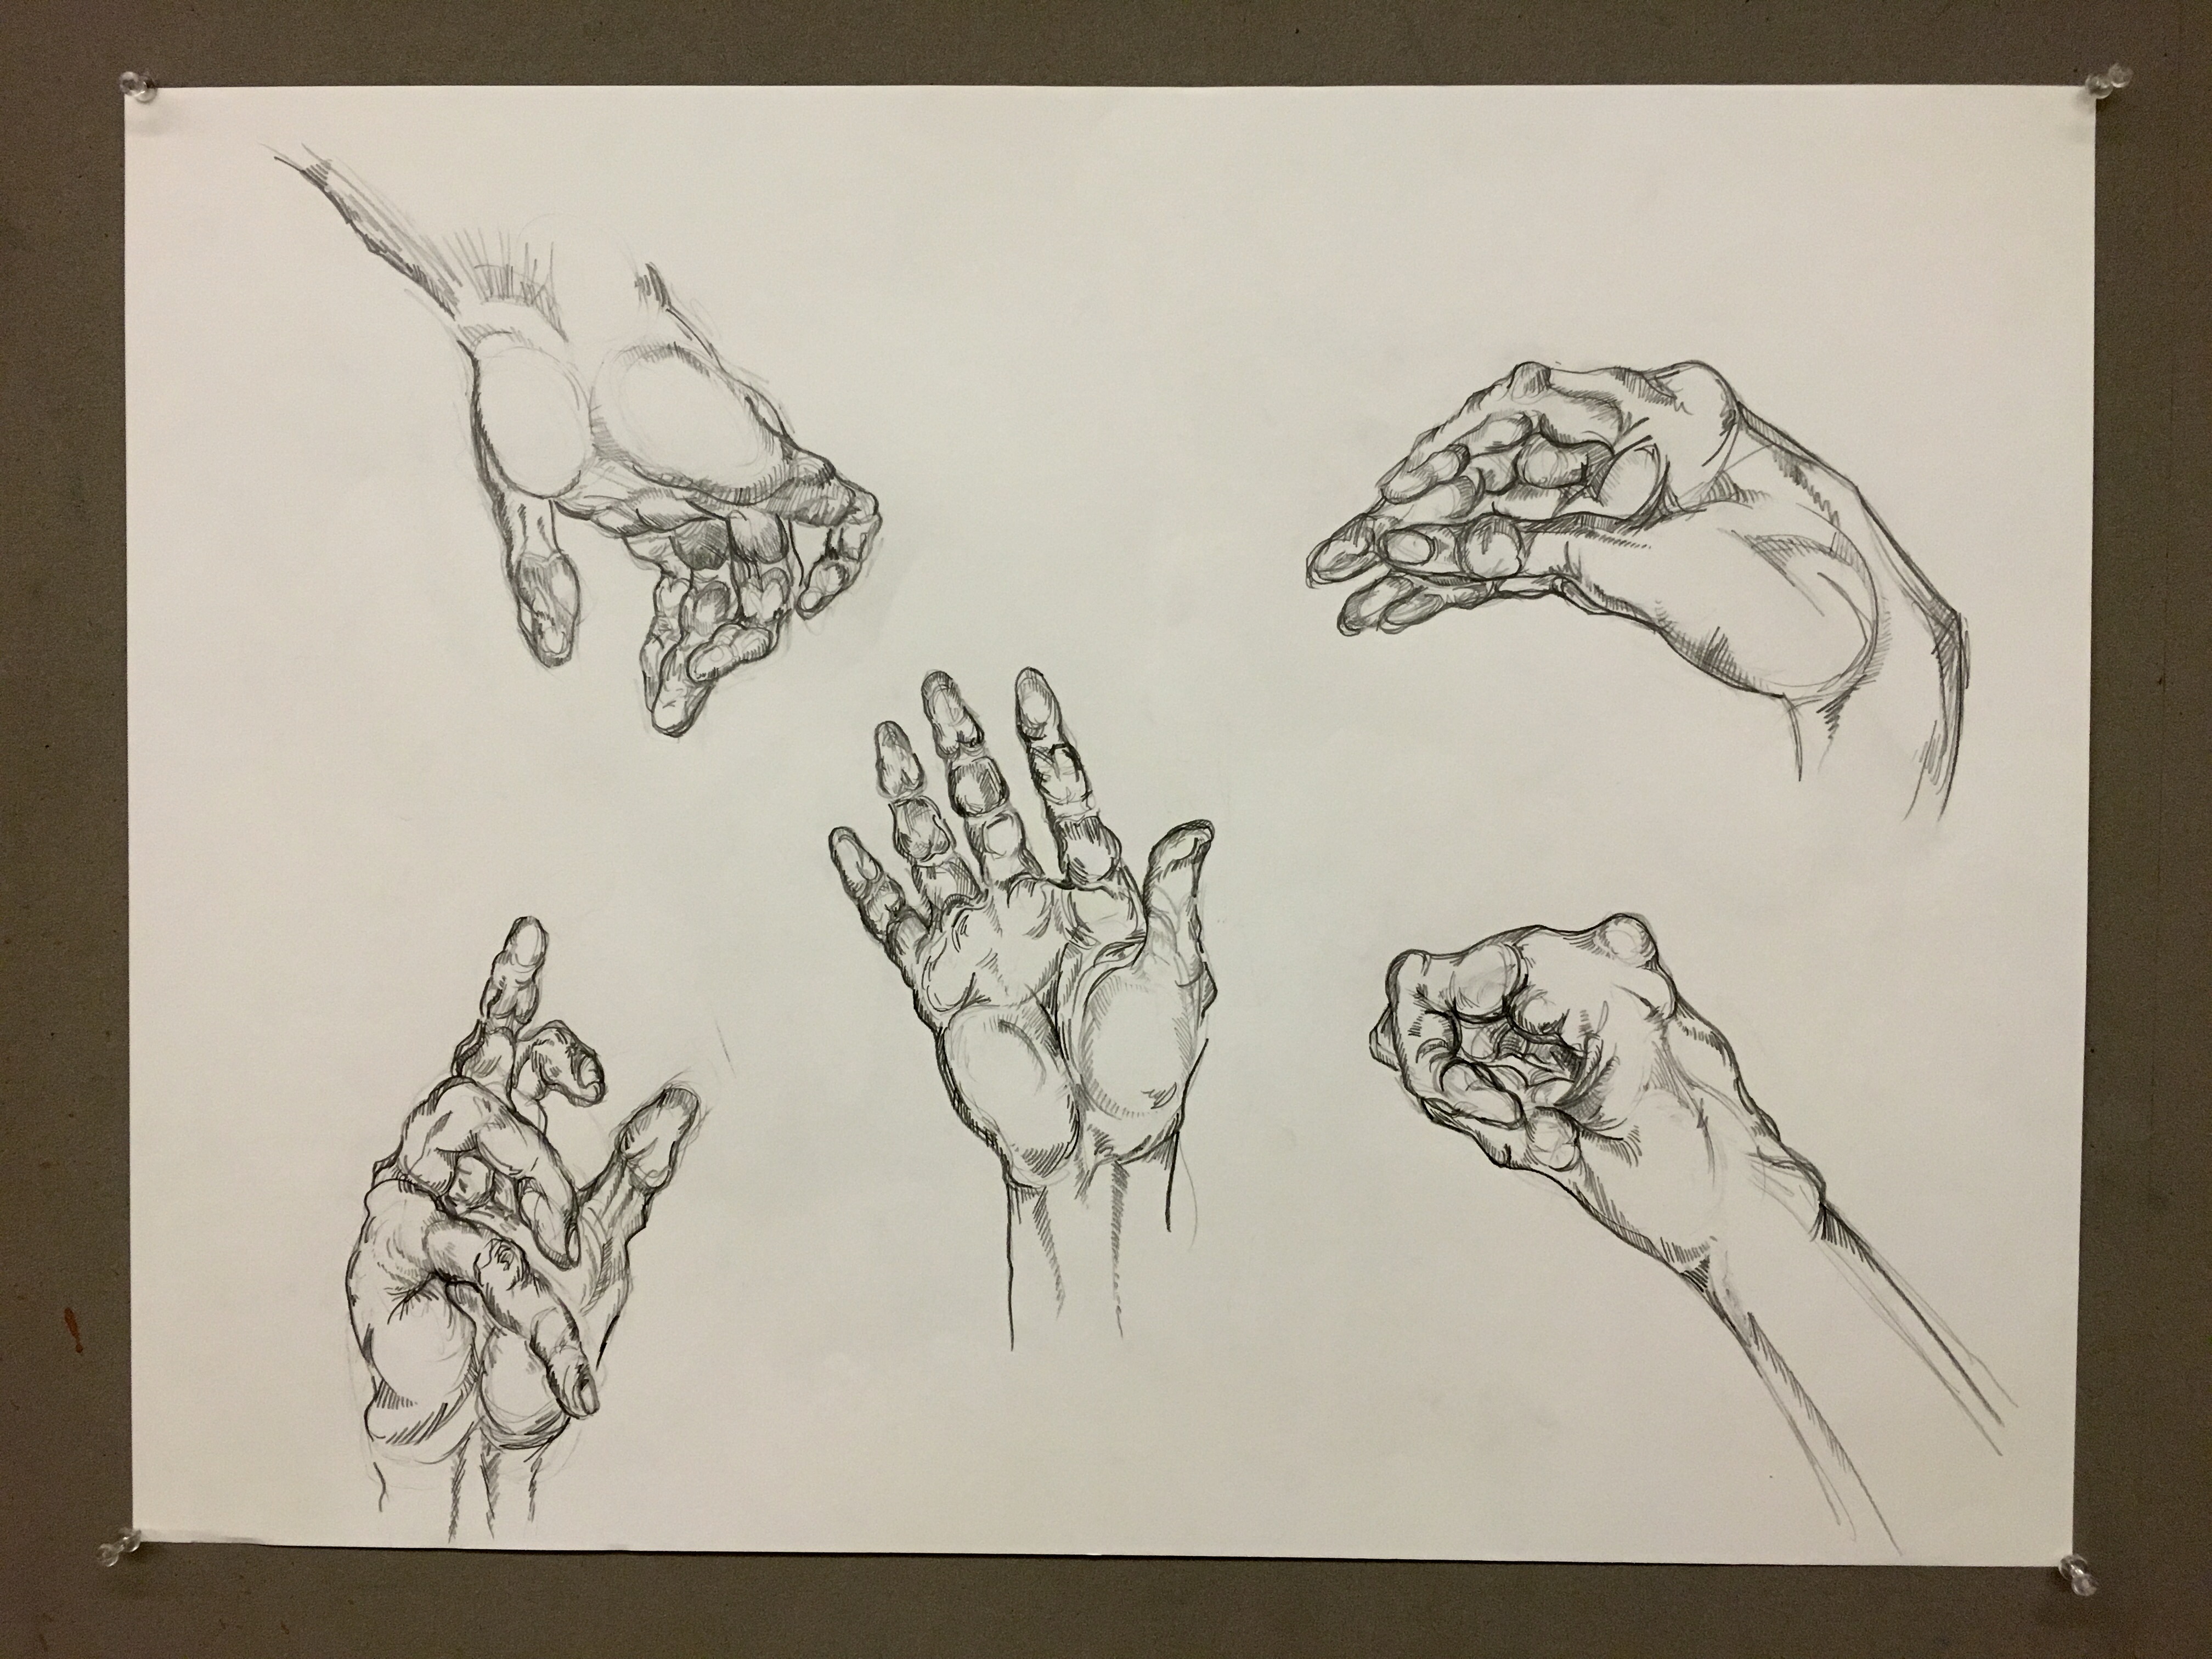 Hands